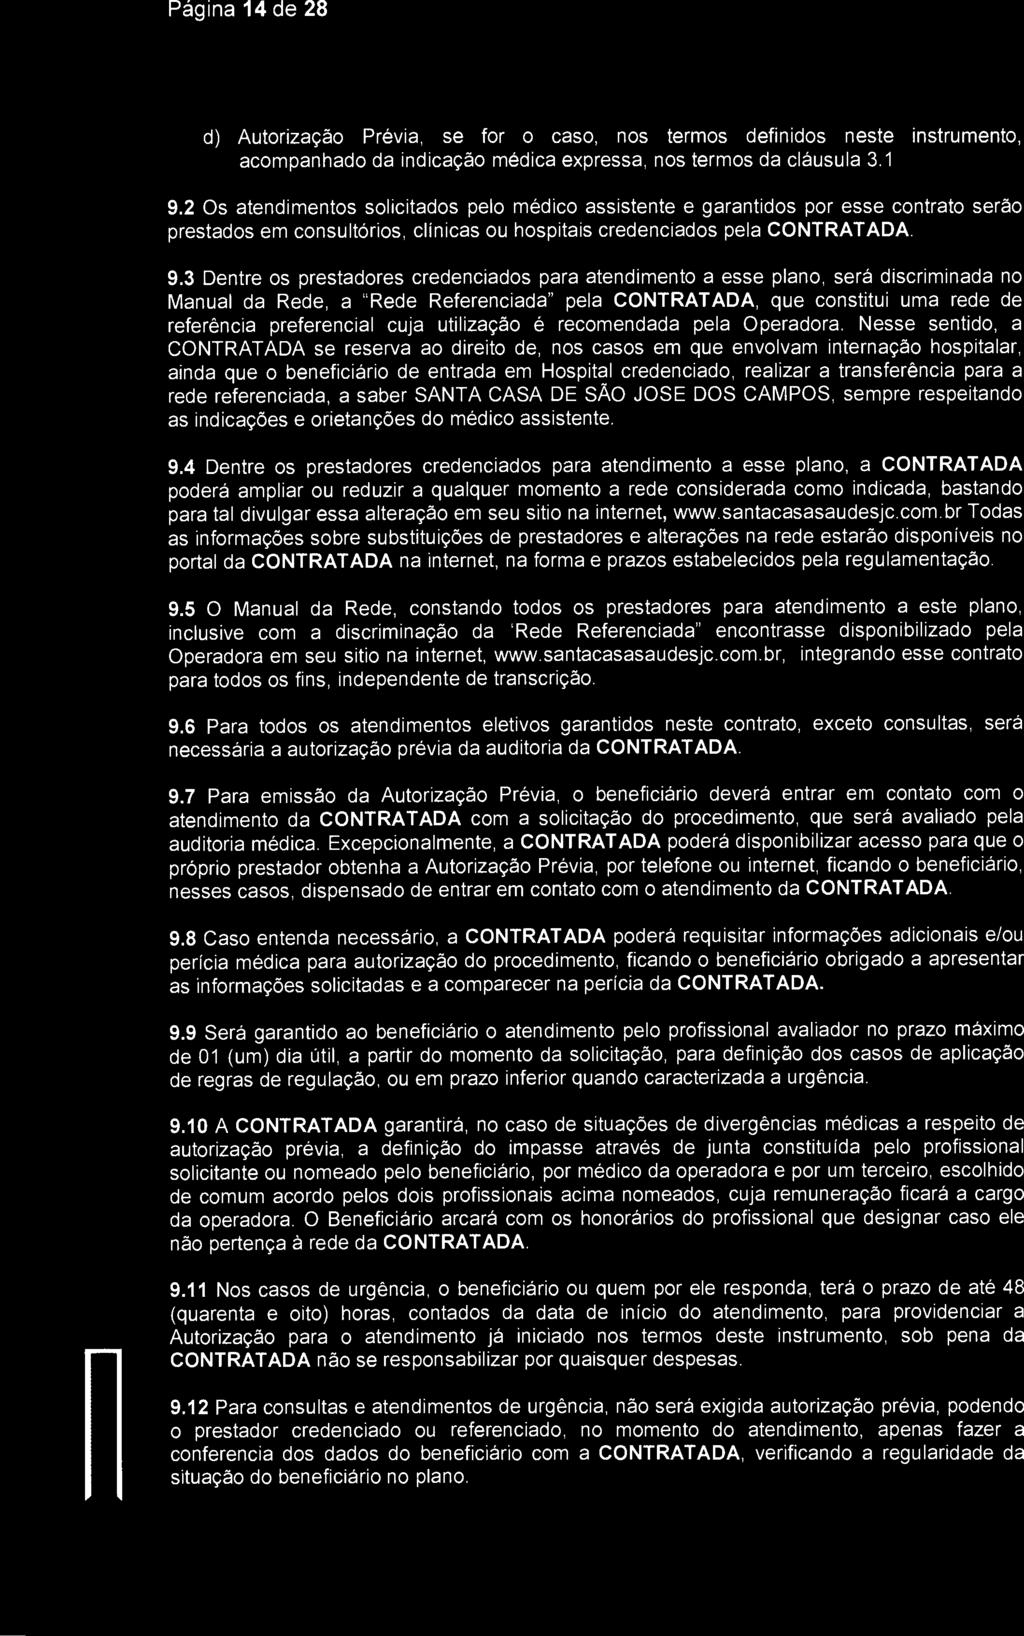 Página 14 de 28 SantaCasa) São Jose dos Campos d) Autorização Prévia, se for o caso, nos termos definidos neste instrumento, acompanhado da indicação médica expressa, nos termos da cláusula 3.1. 9.